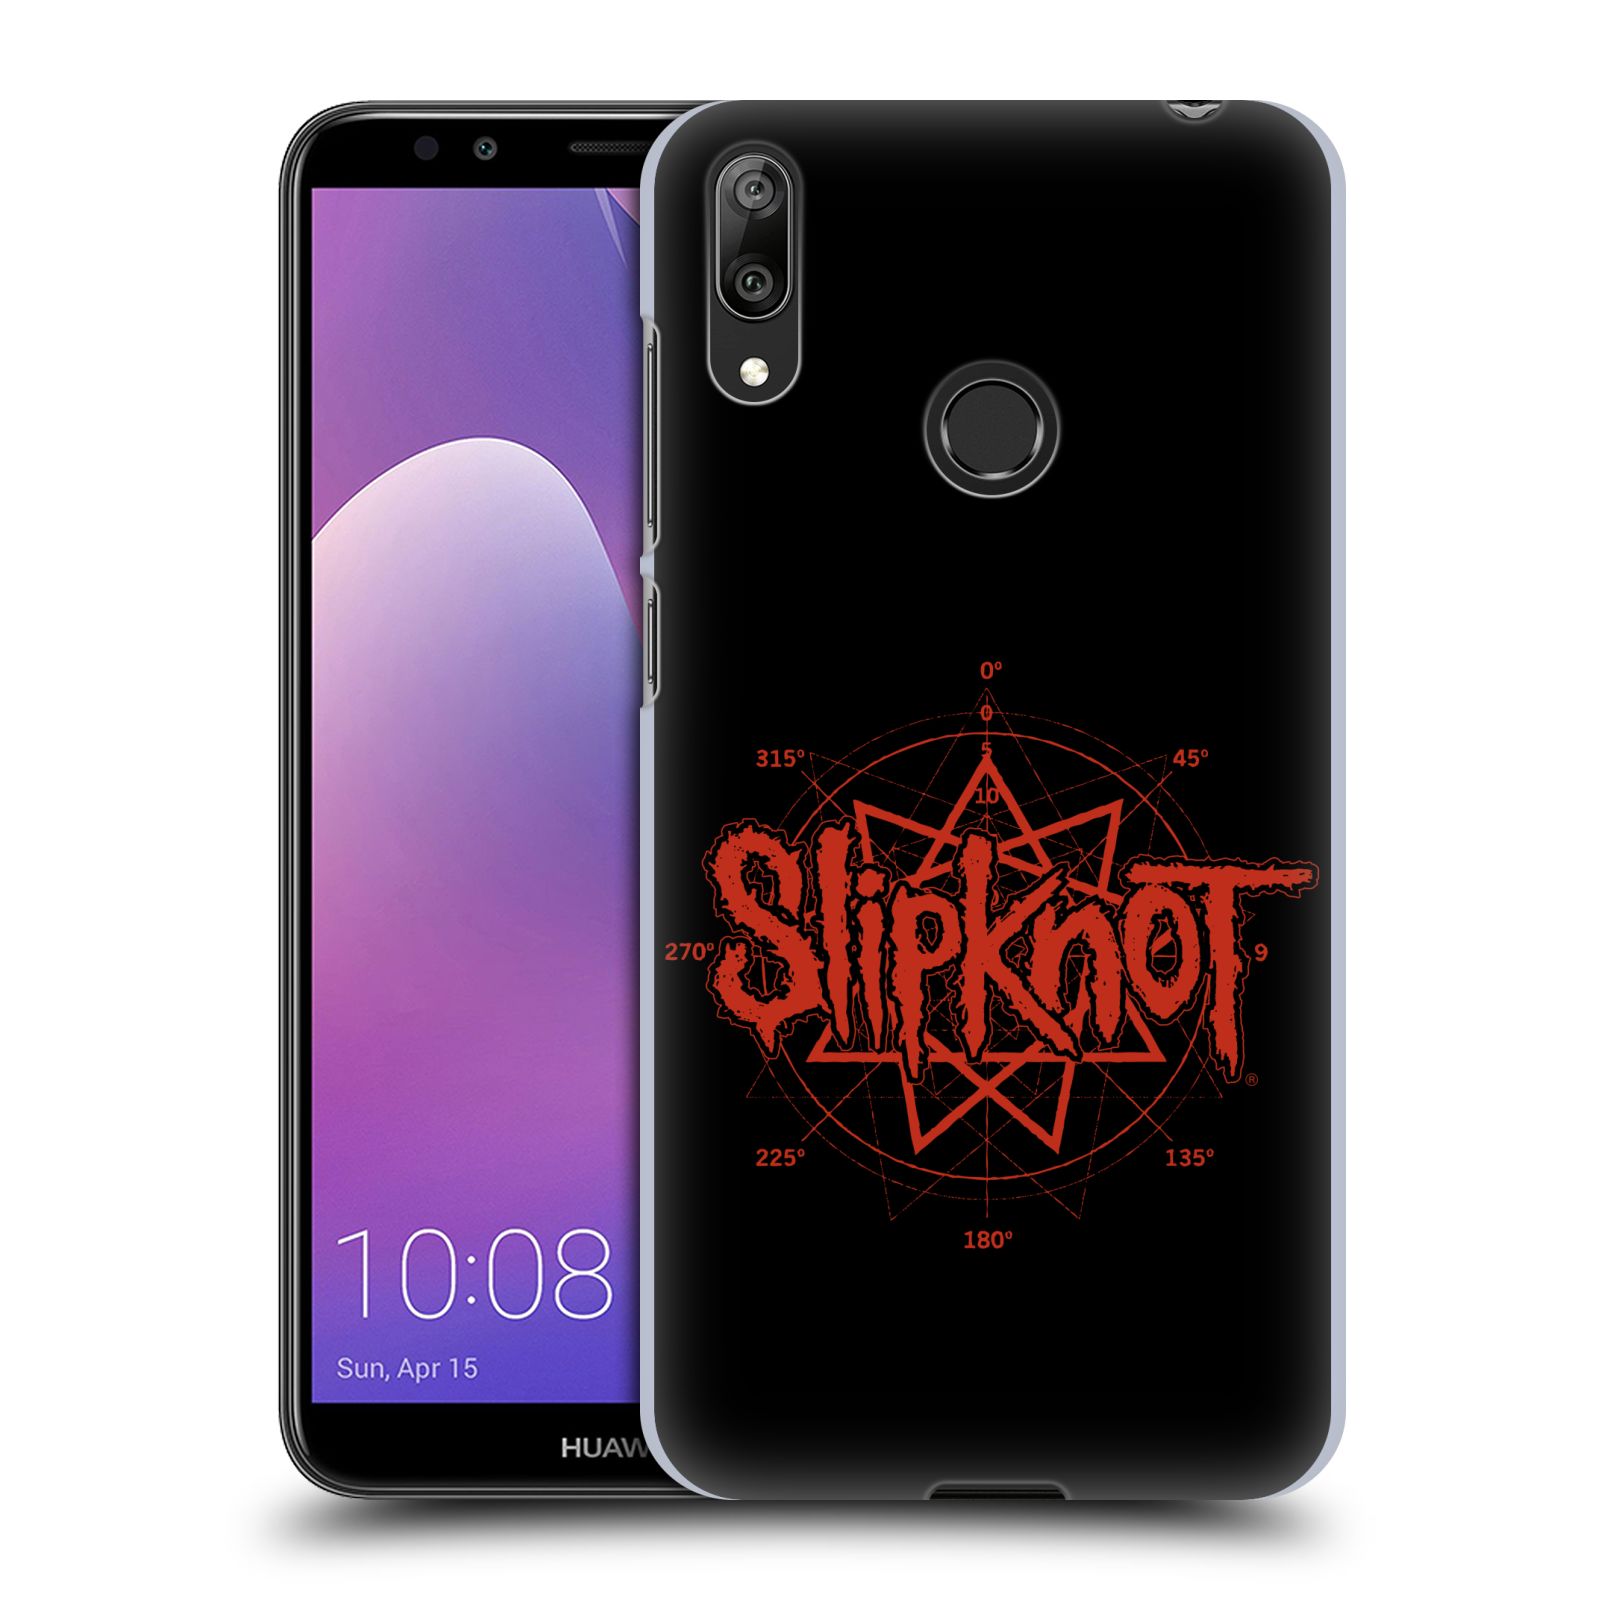 Pouzdro na mobil Huawei Y7 2019 - Head Case - hudební skupina Slipknot logo